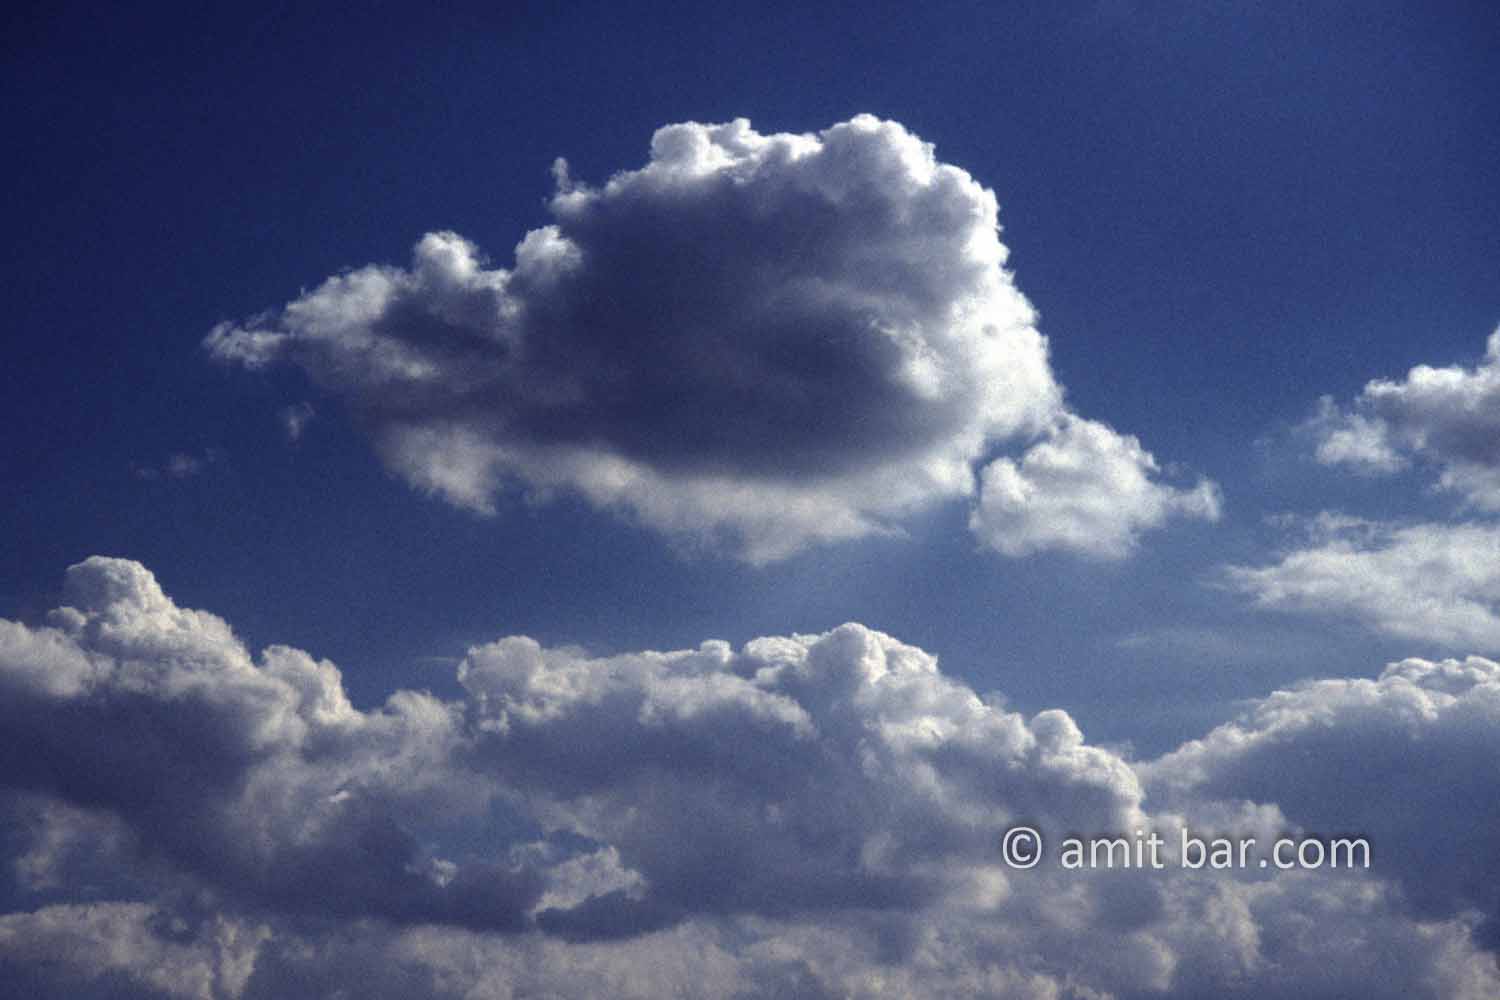 Clouds IX: black and white clouds in blue sky